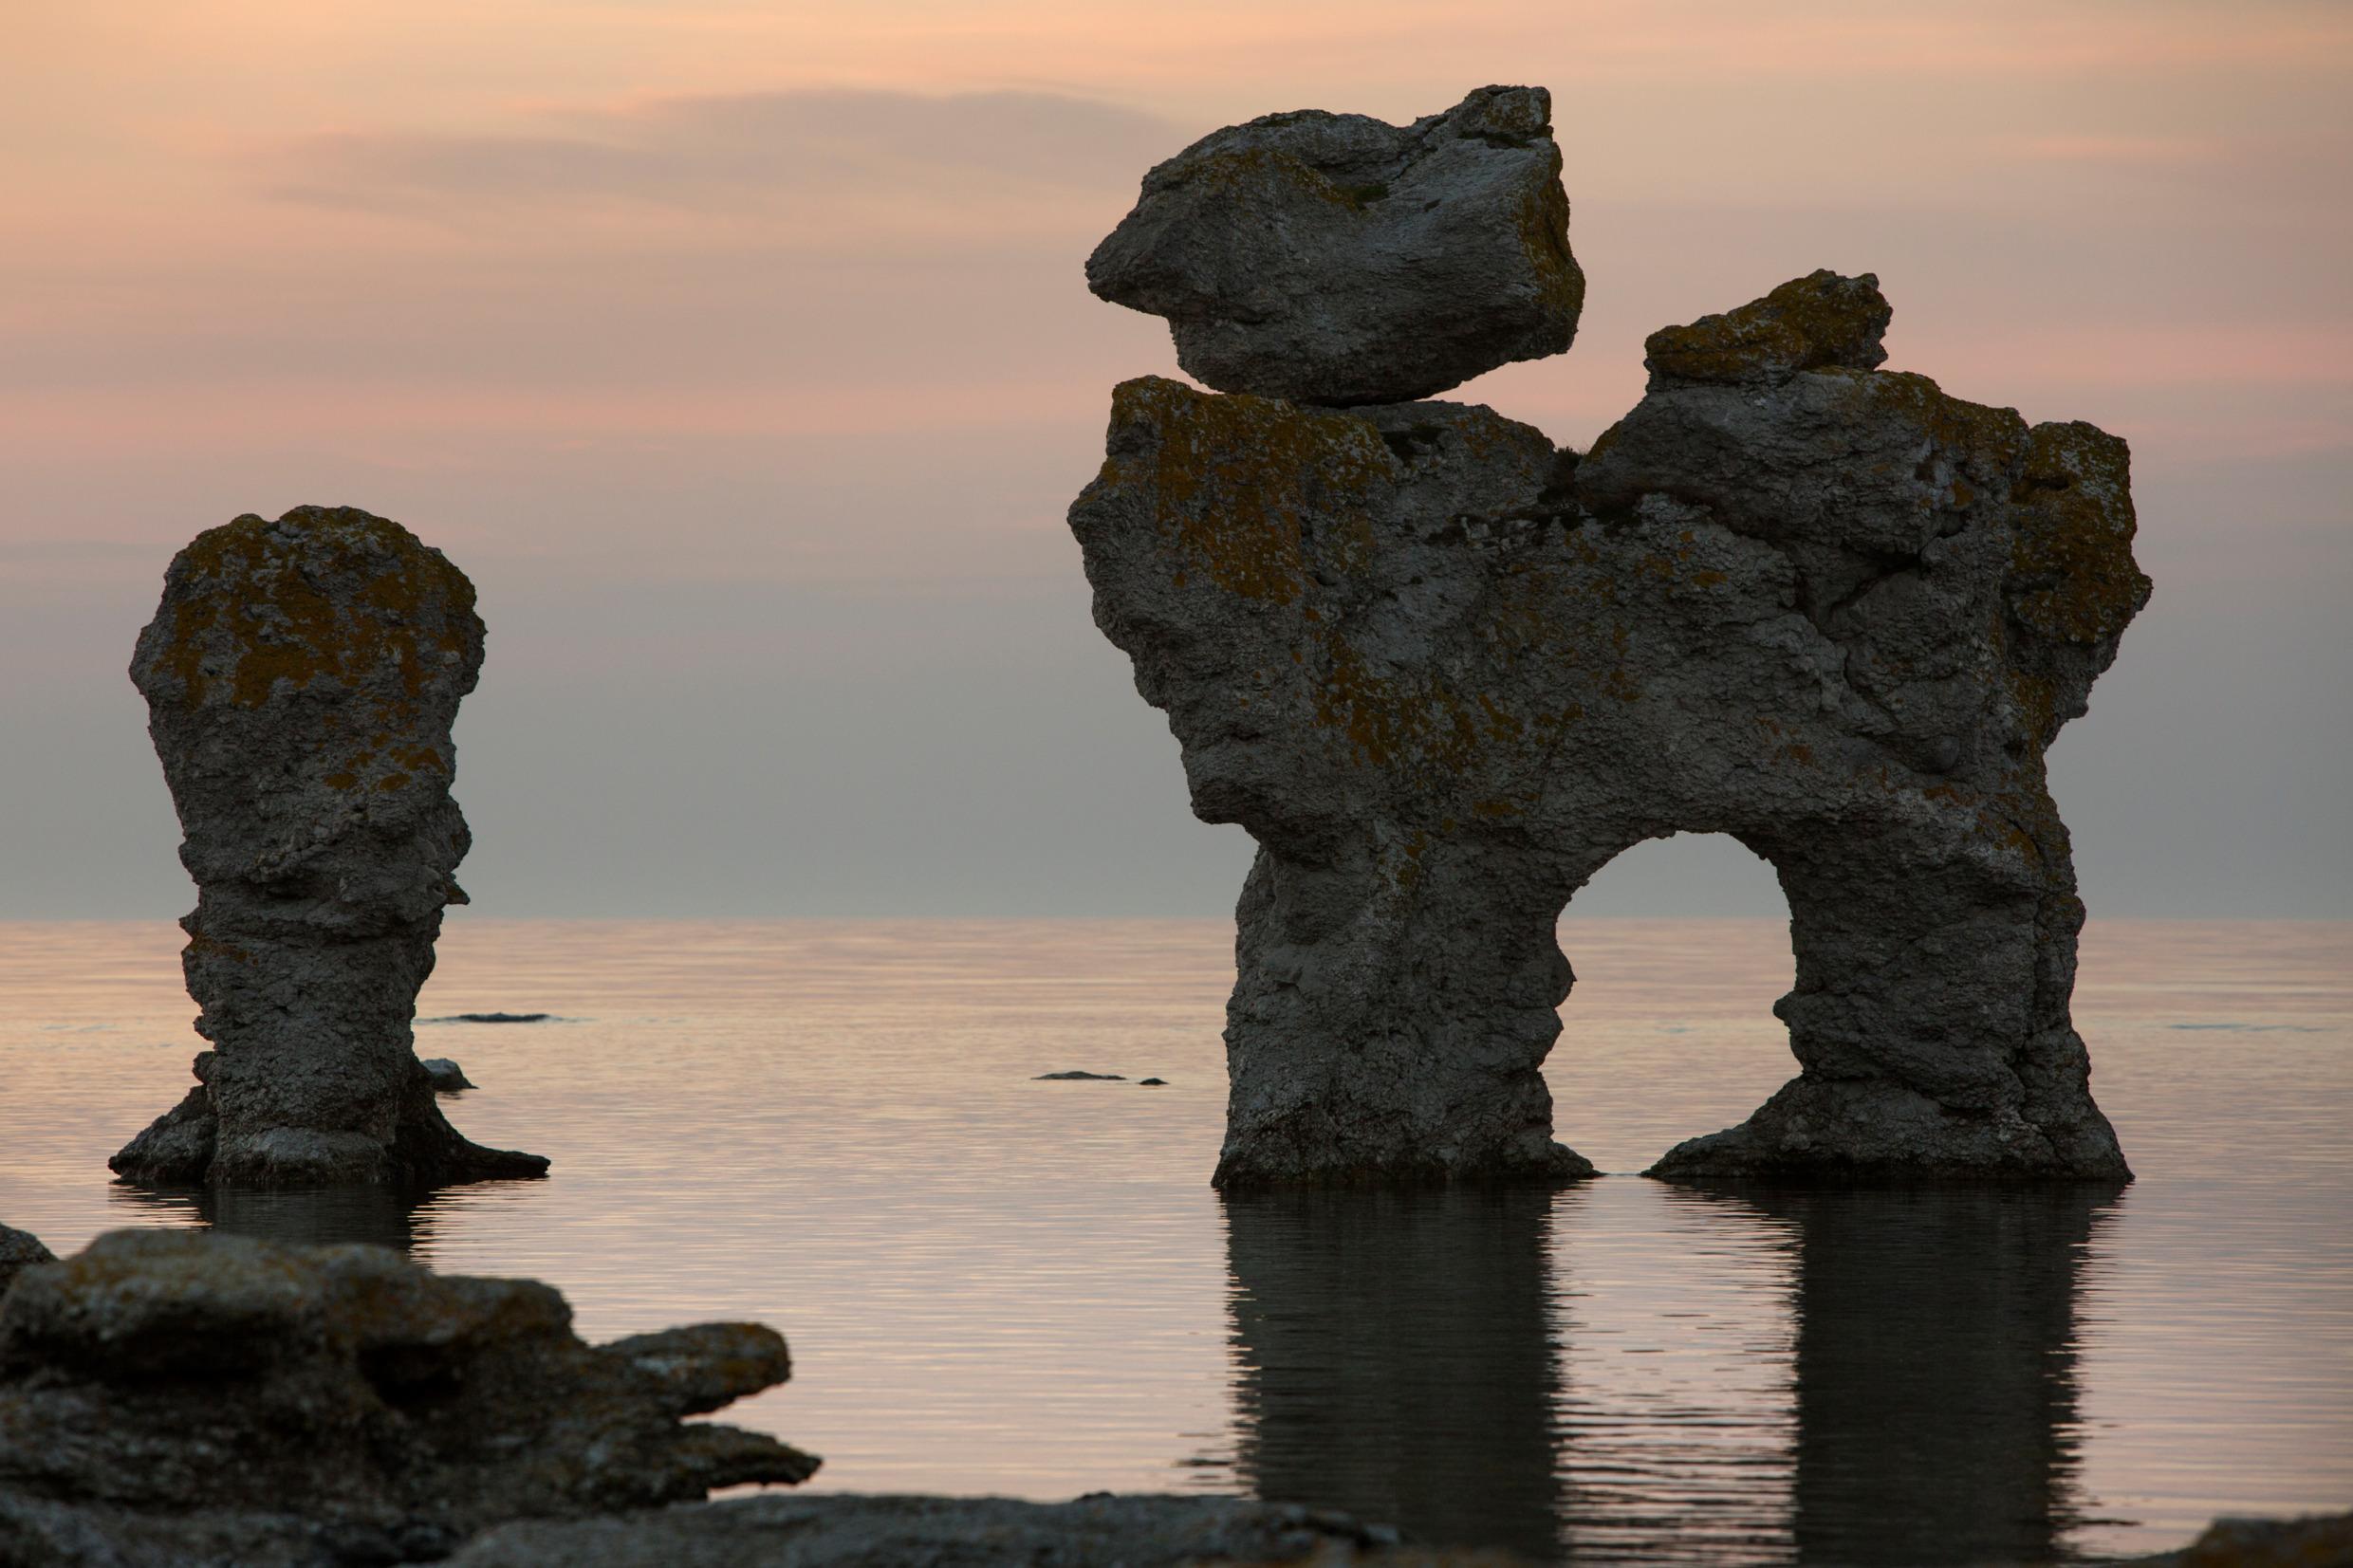 تكوينات الحجر الجيري في مياه بحر البلطيق أثناء الغسق.